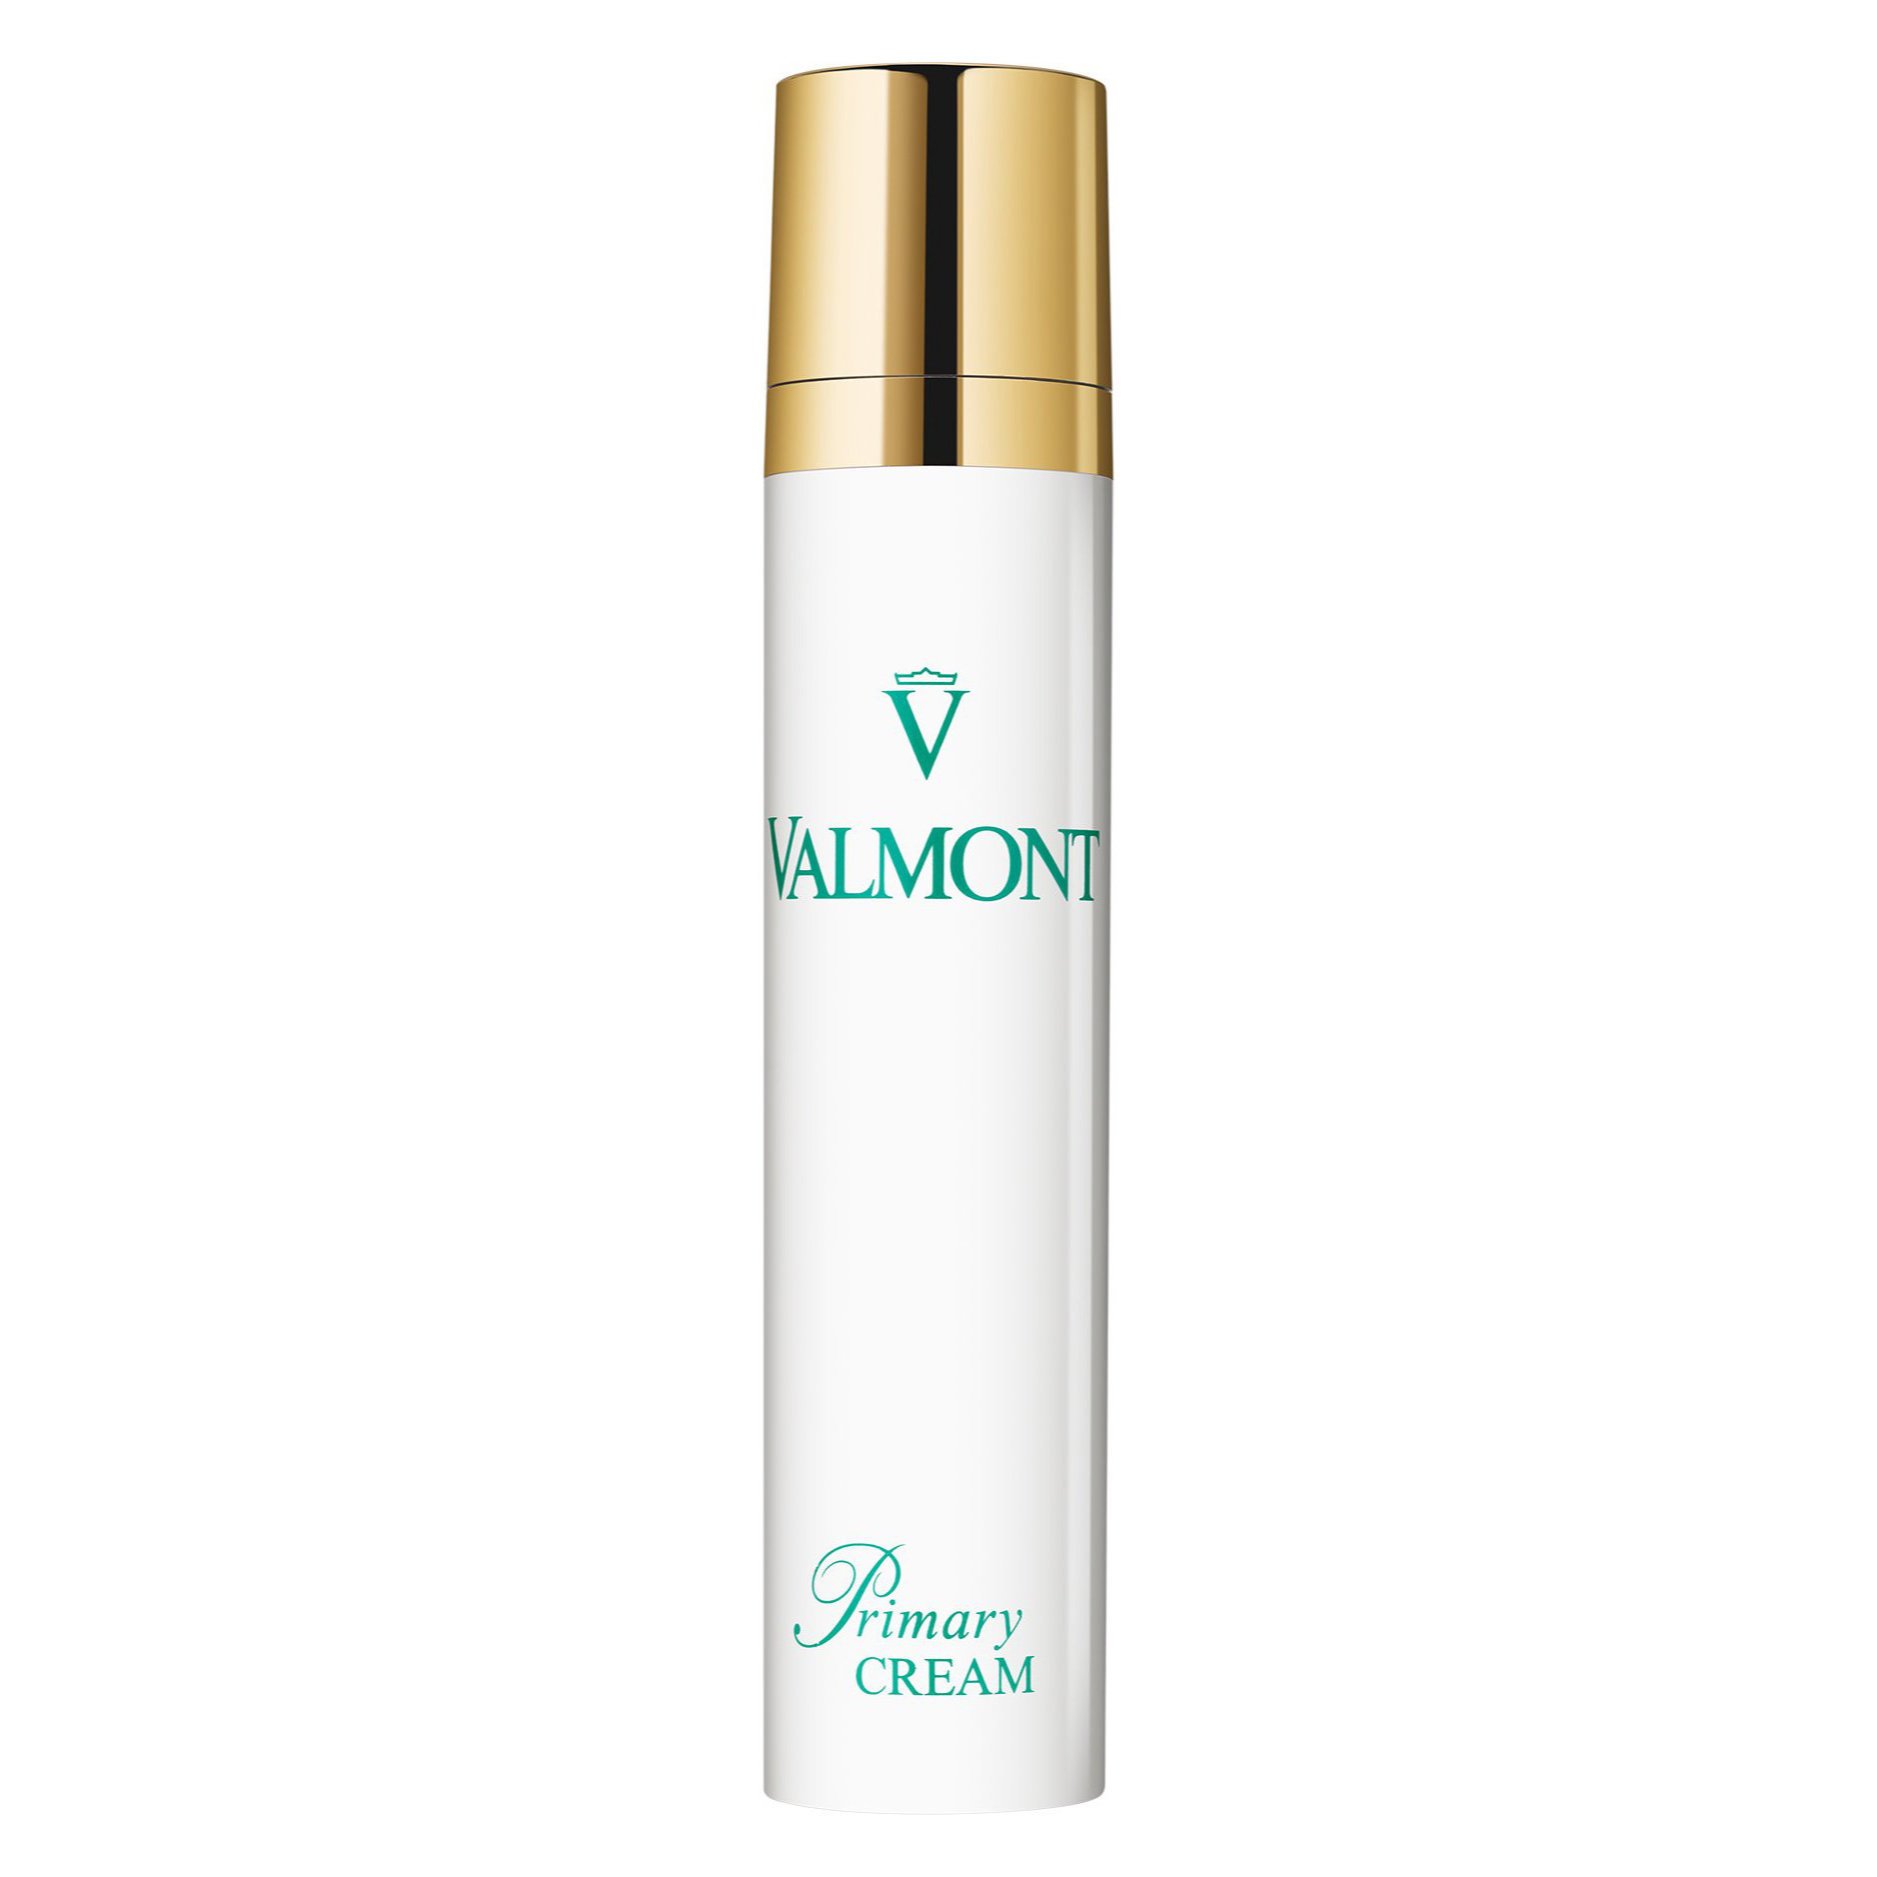 Primary Cream Valmont